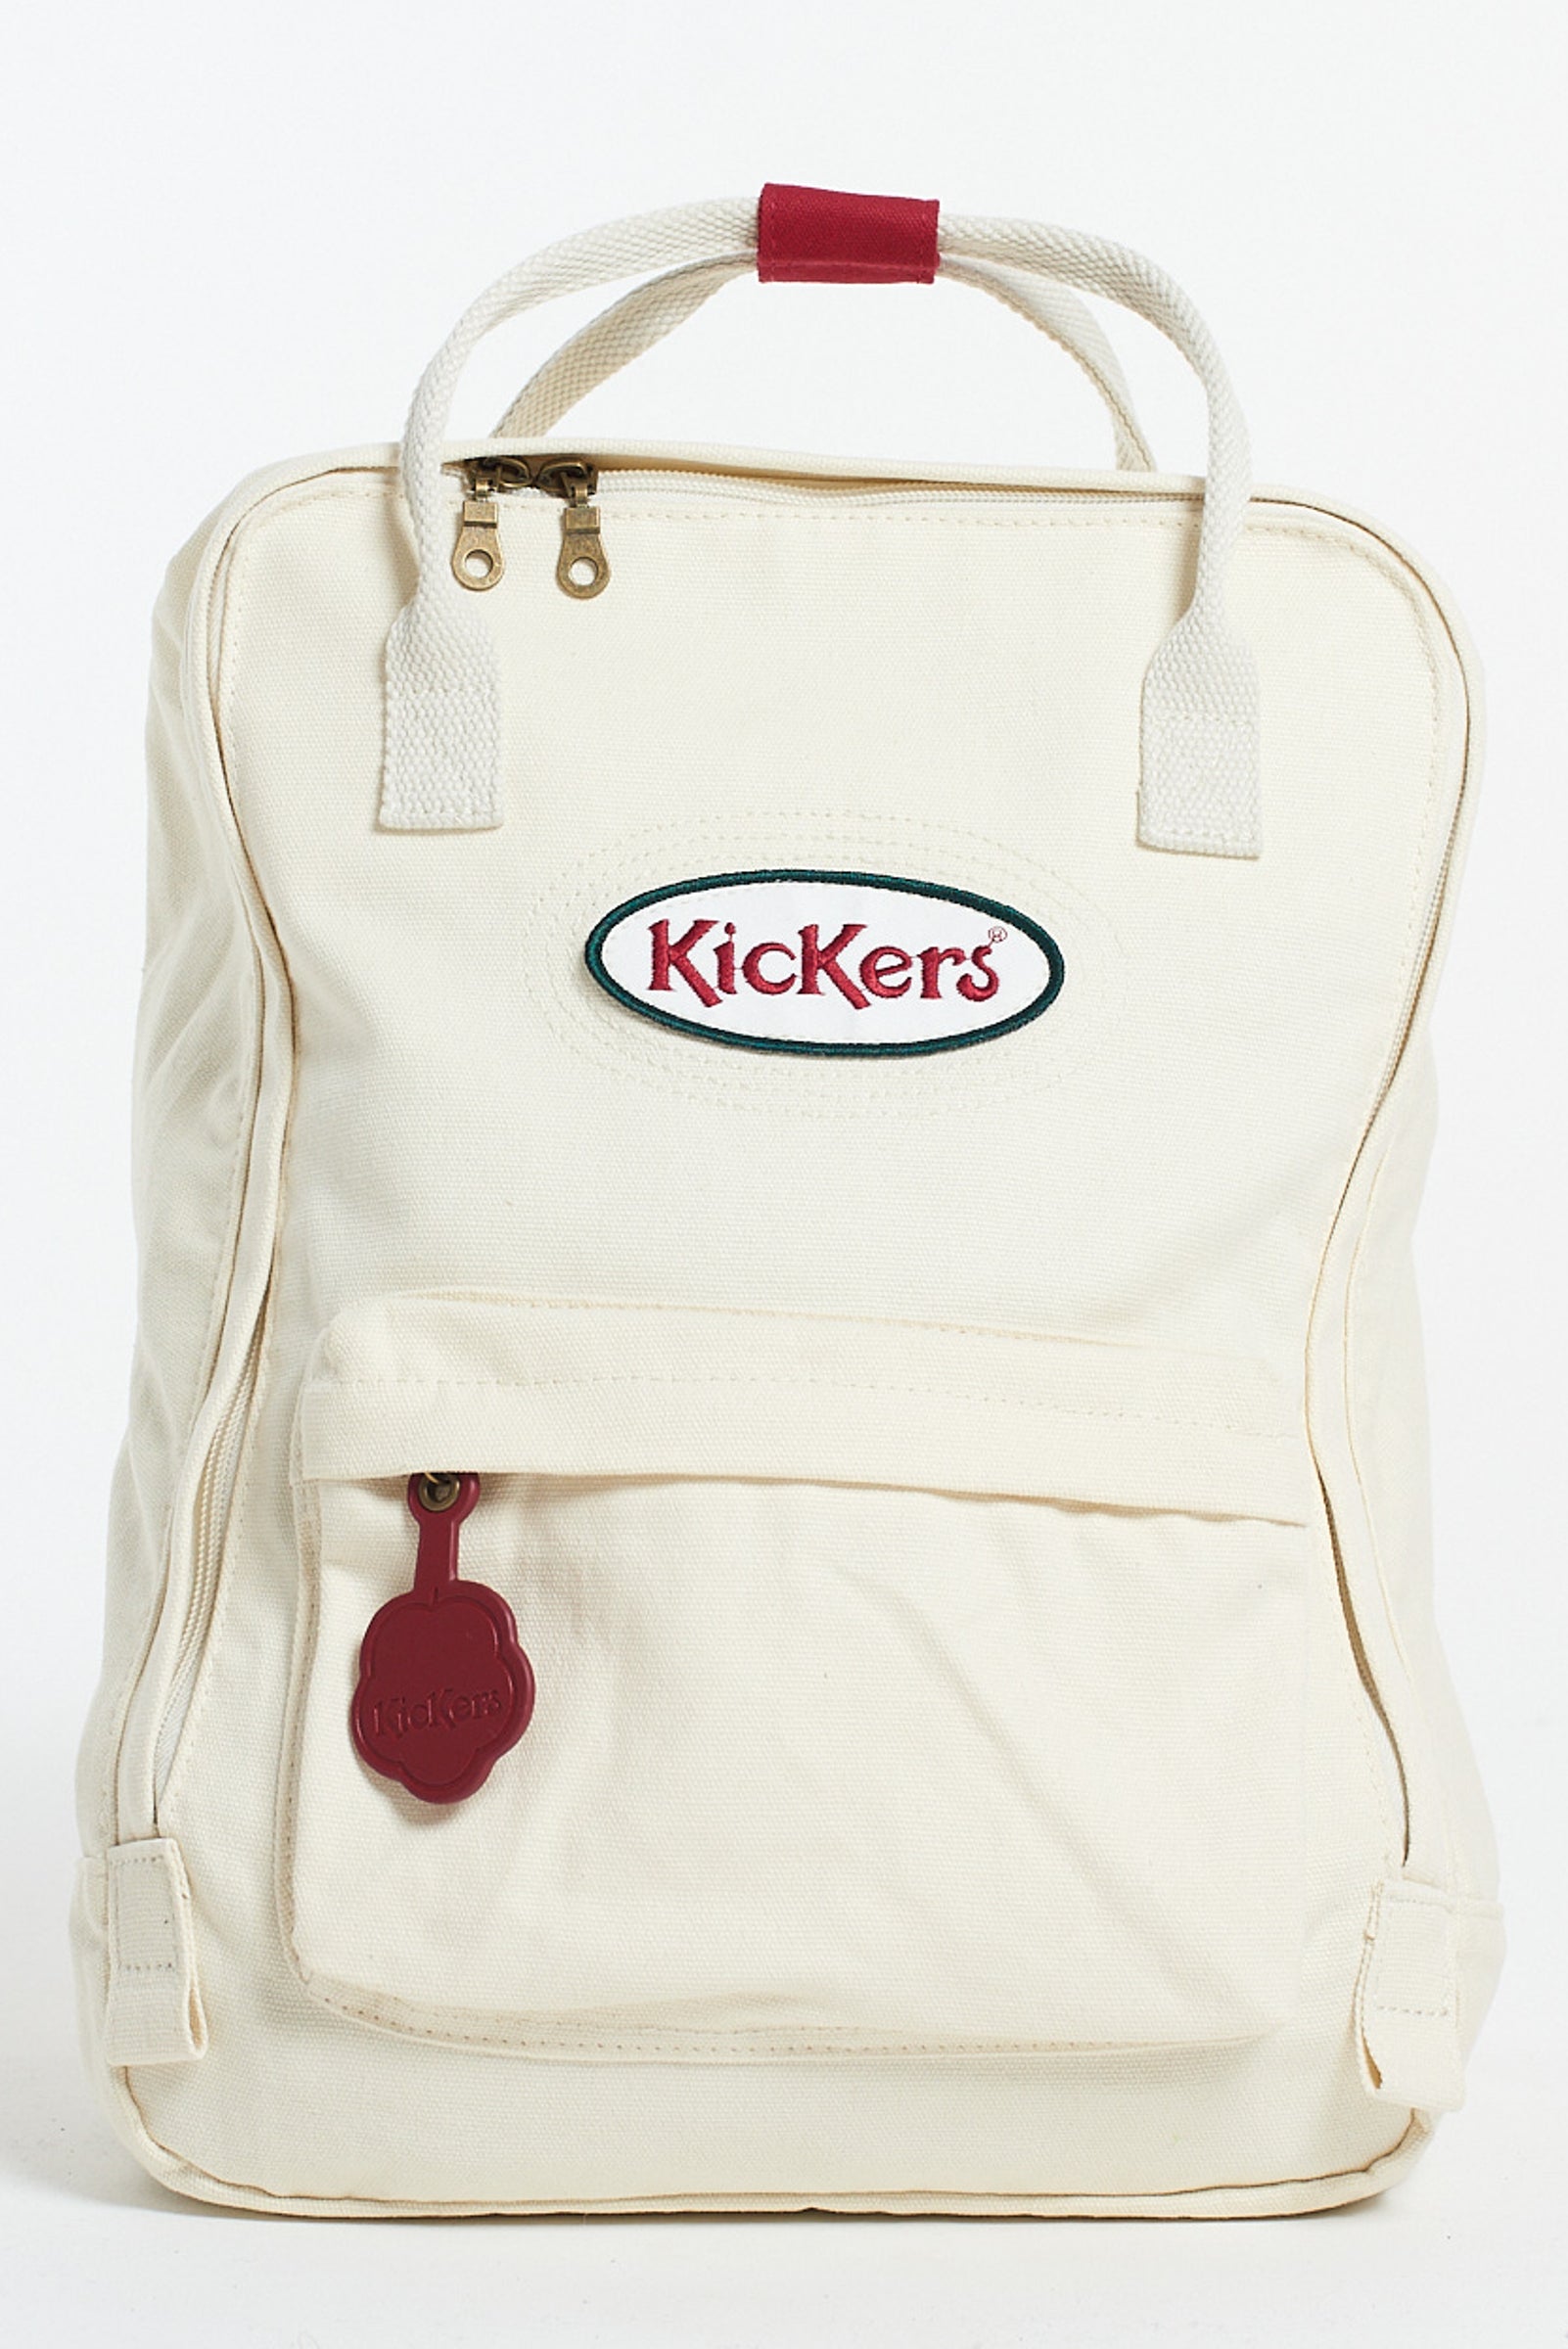 Kickers Classics Ecru Backpack The Ragged Priest